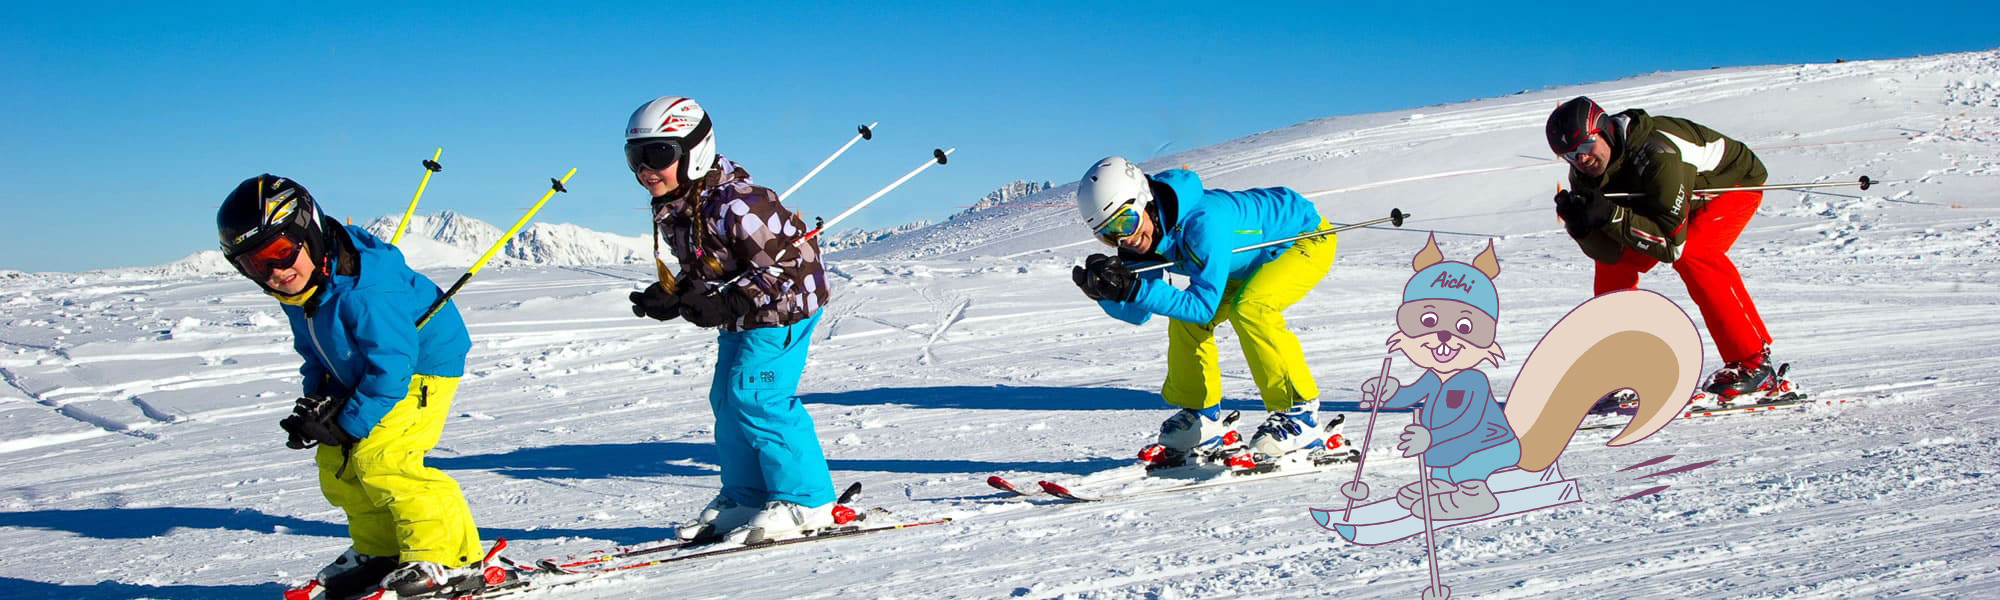 Familie beim Skifahren in Großarl © www.grossarltal.info